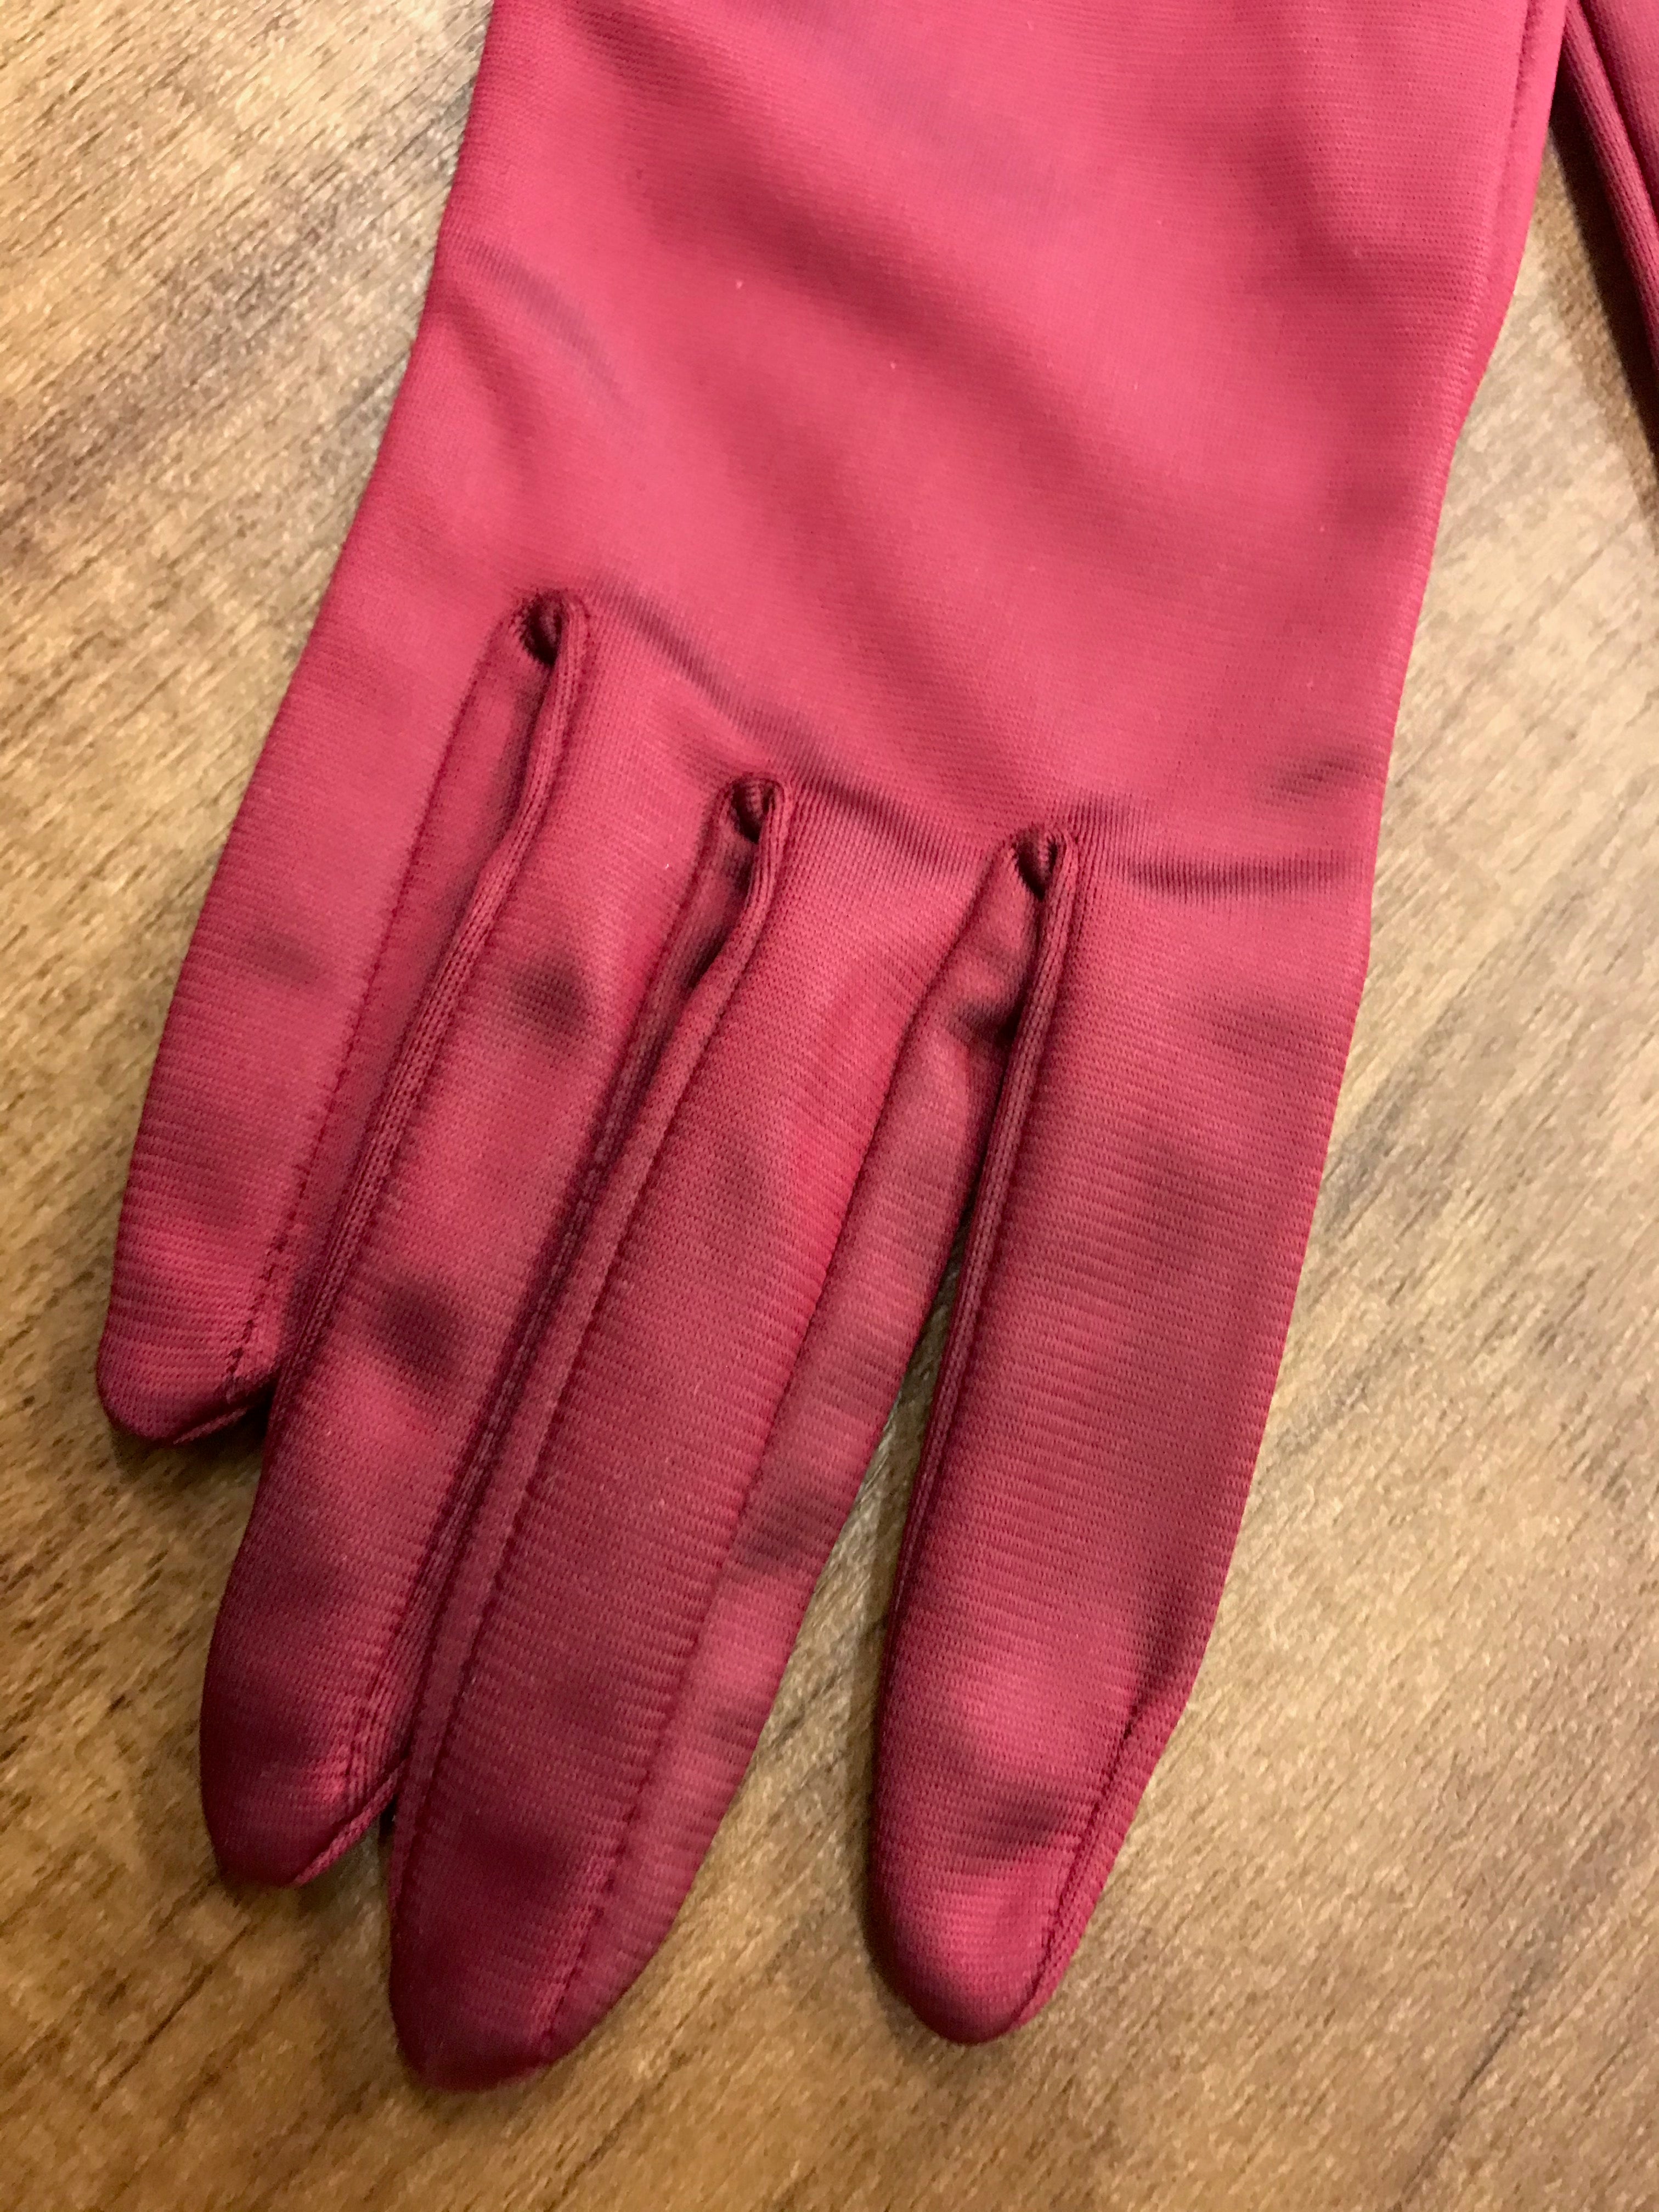 20er jahre Handschuhe in weinrot